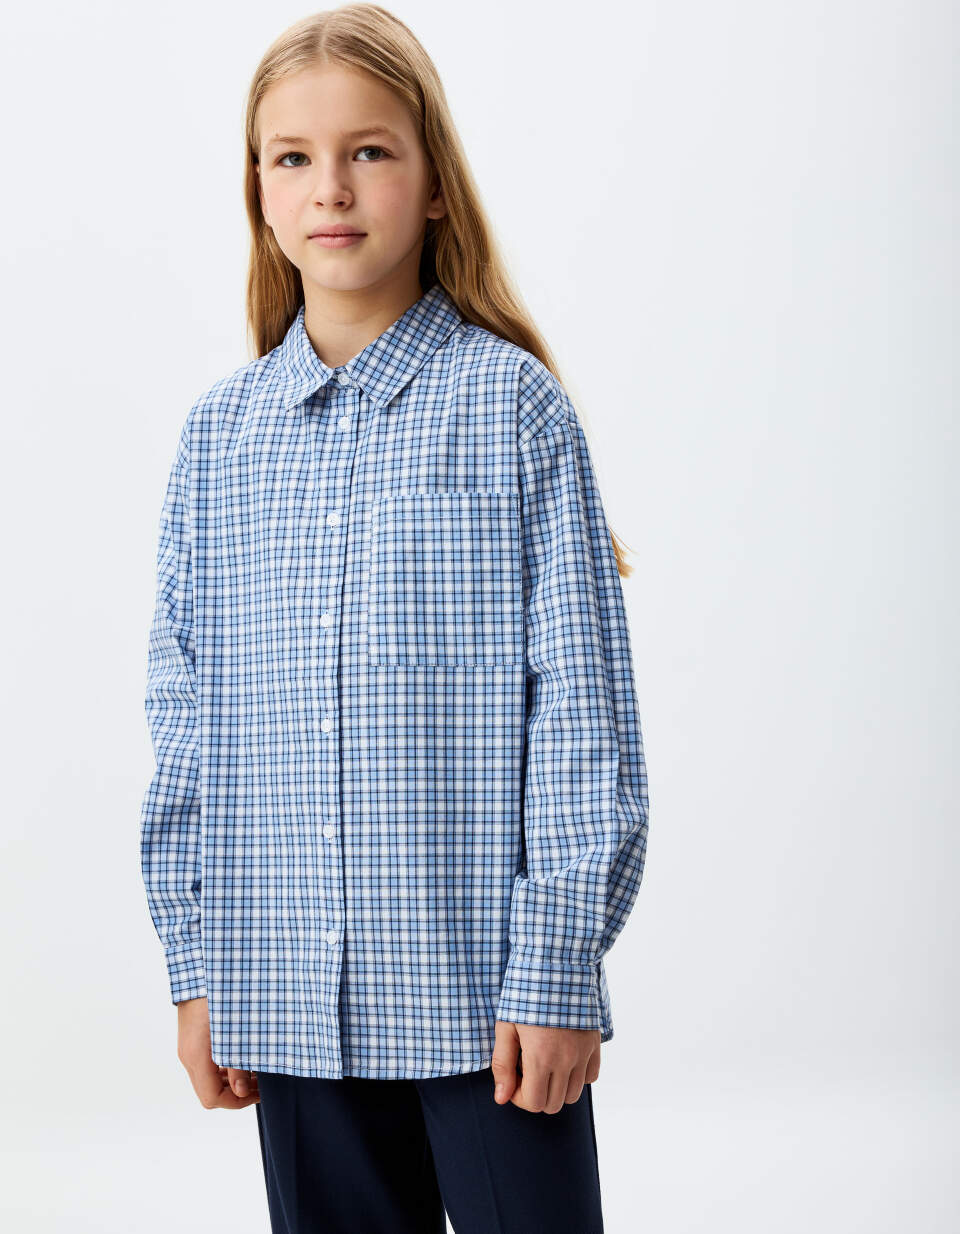 Удлиненная рубашка в клетку для девочек цена и фото